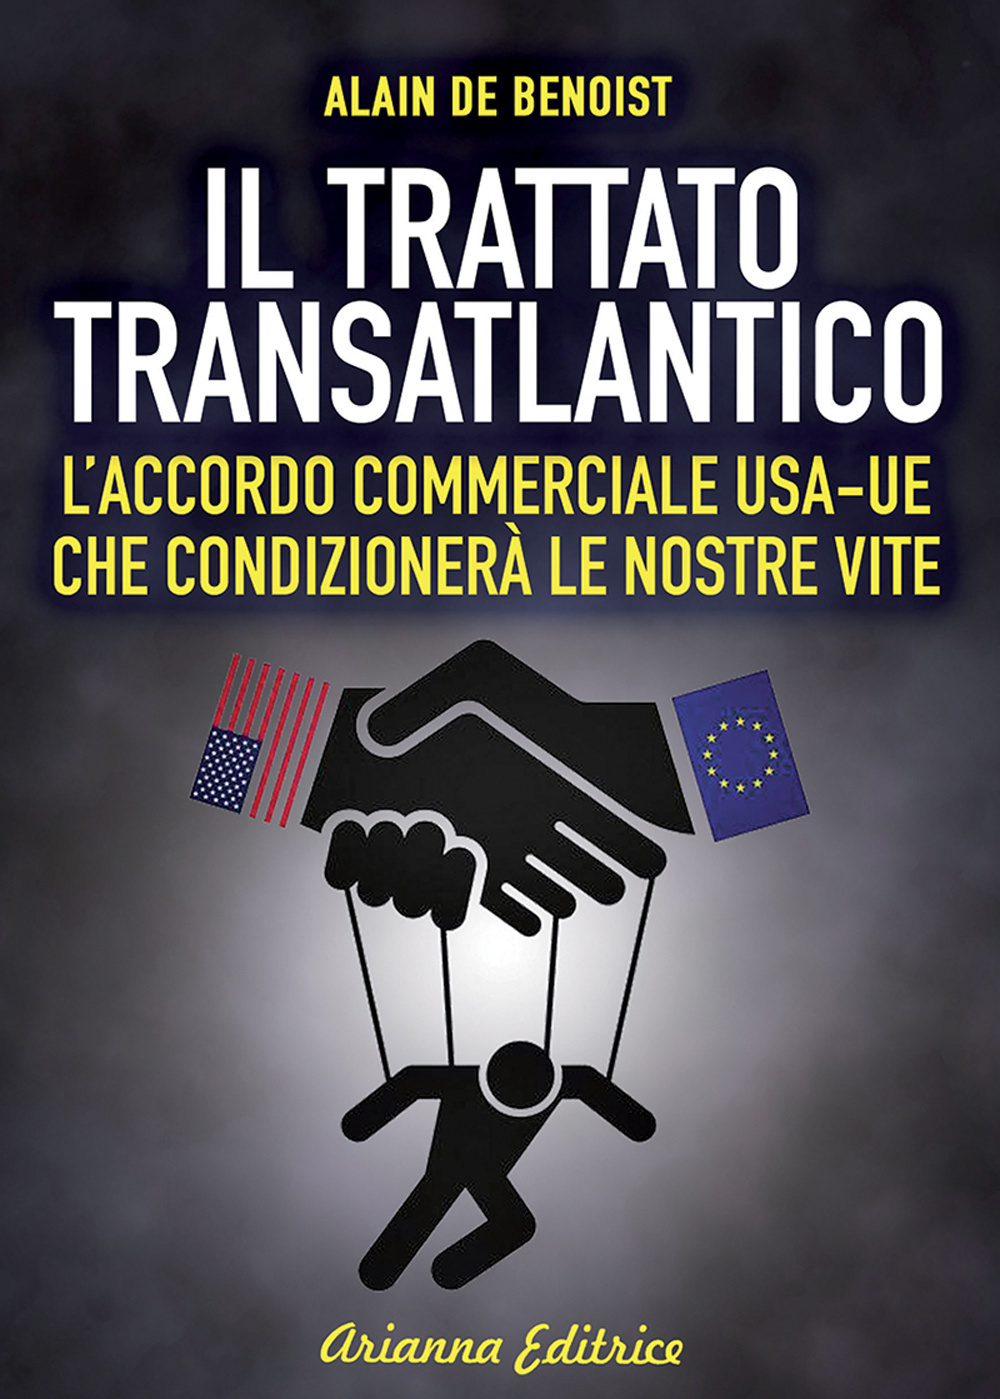 Il Trattato transatlantico